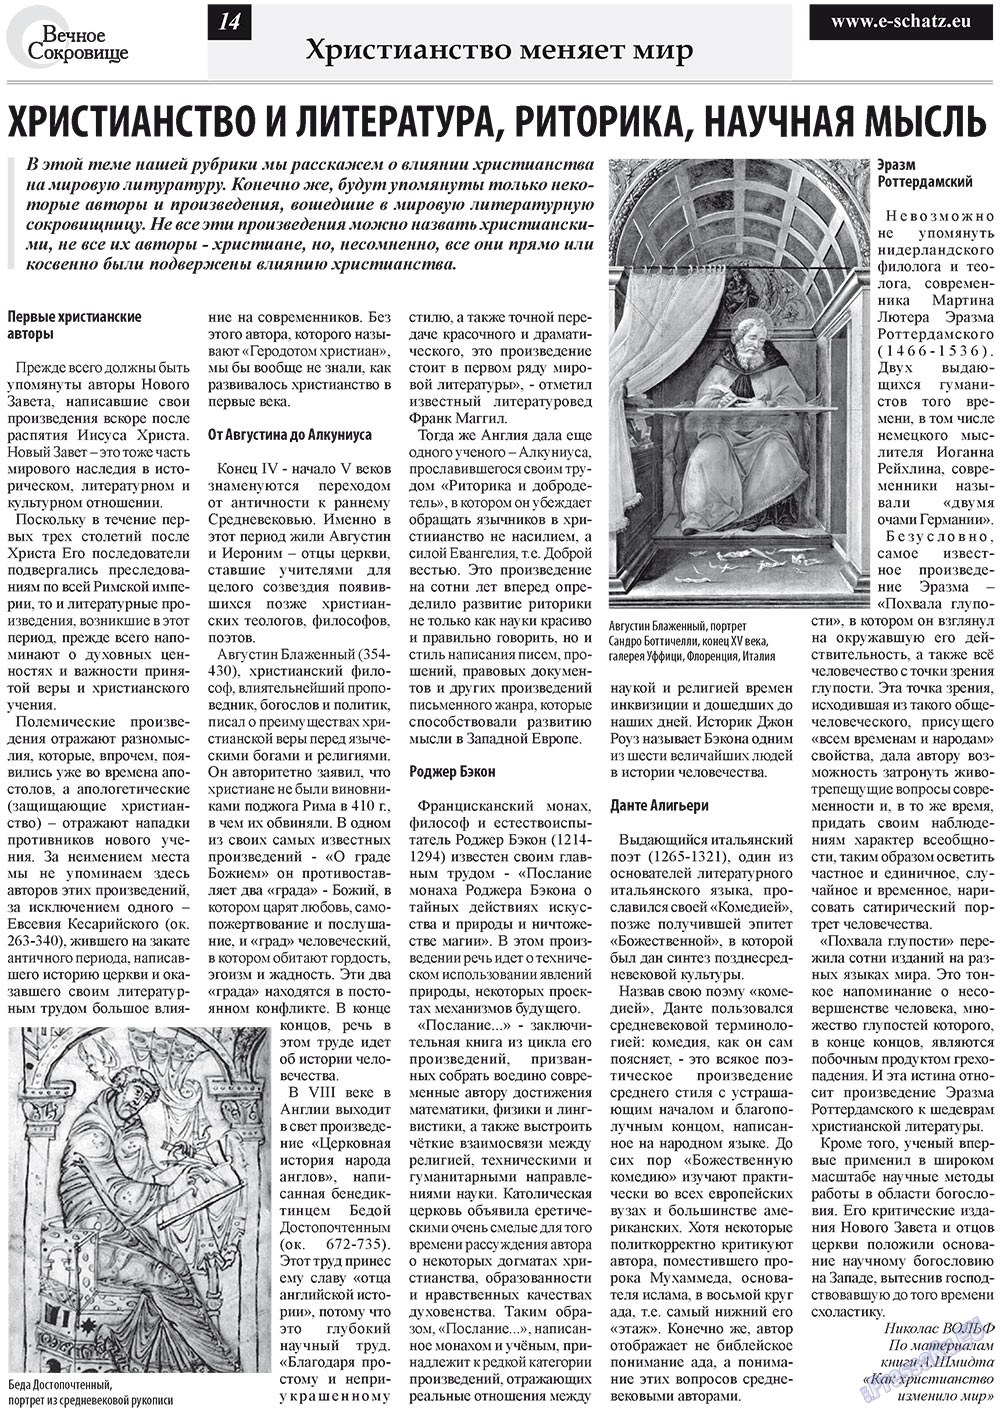 Вечное сокровище (газета). 2011 год, номер 6, стр. 14